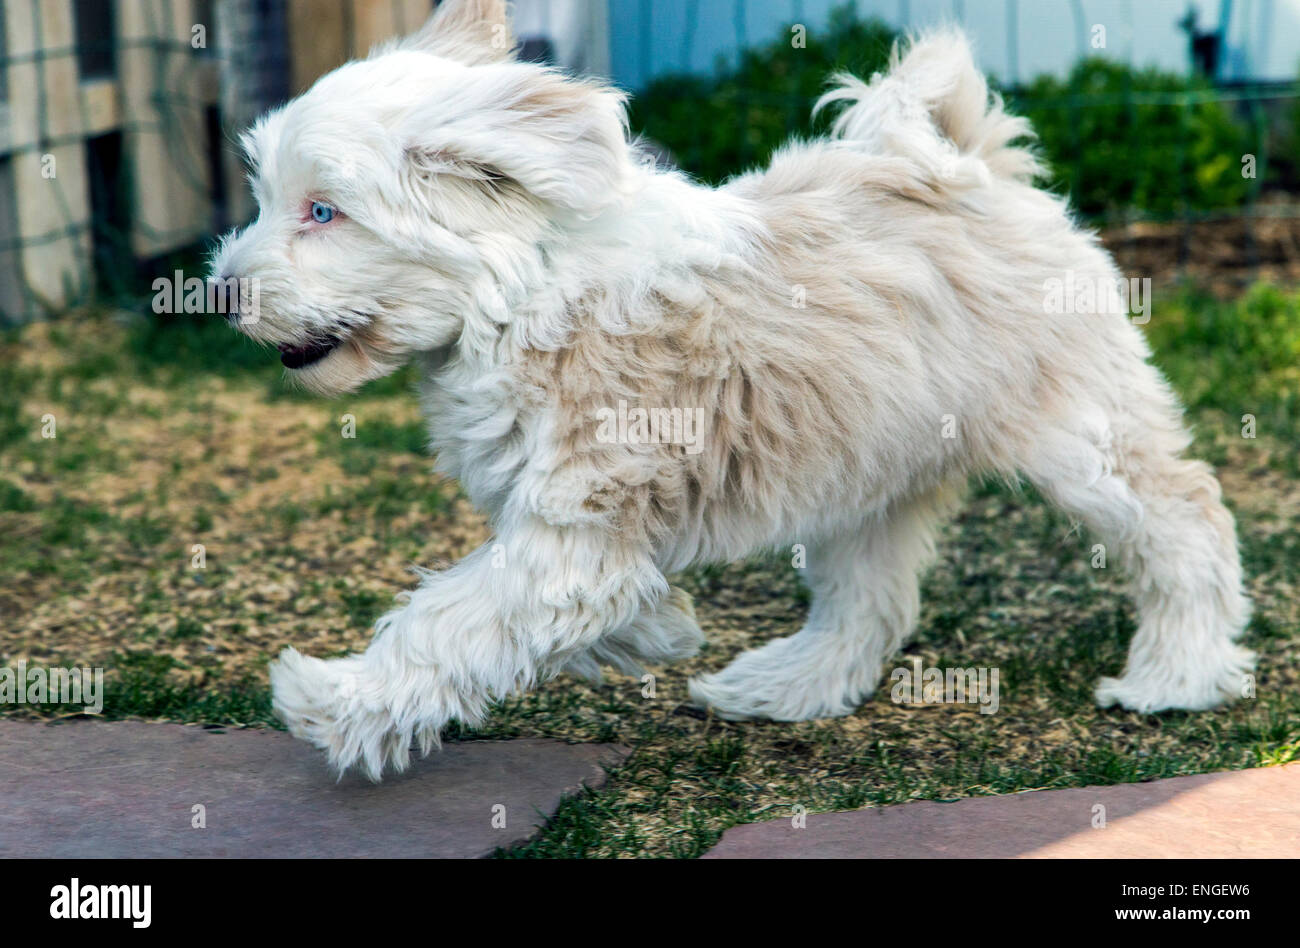 Terrier tibetano Cachorros jugando en el jardín de hierba Foto de stock